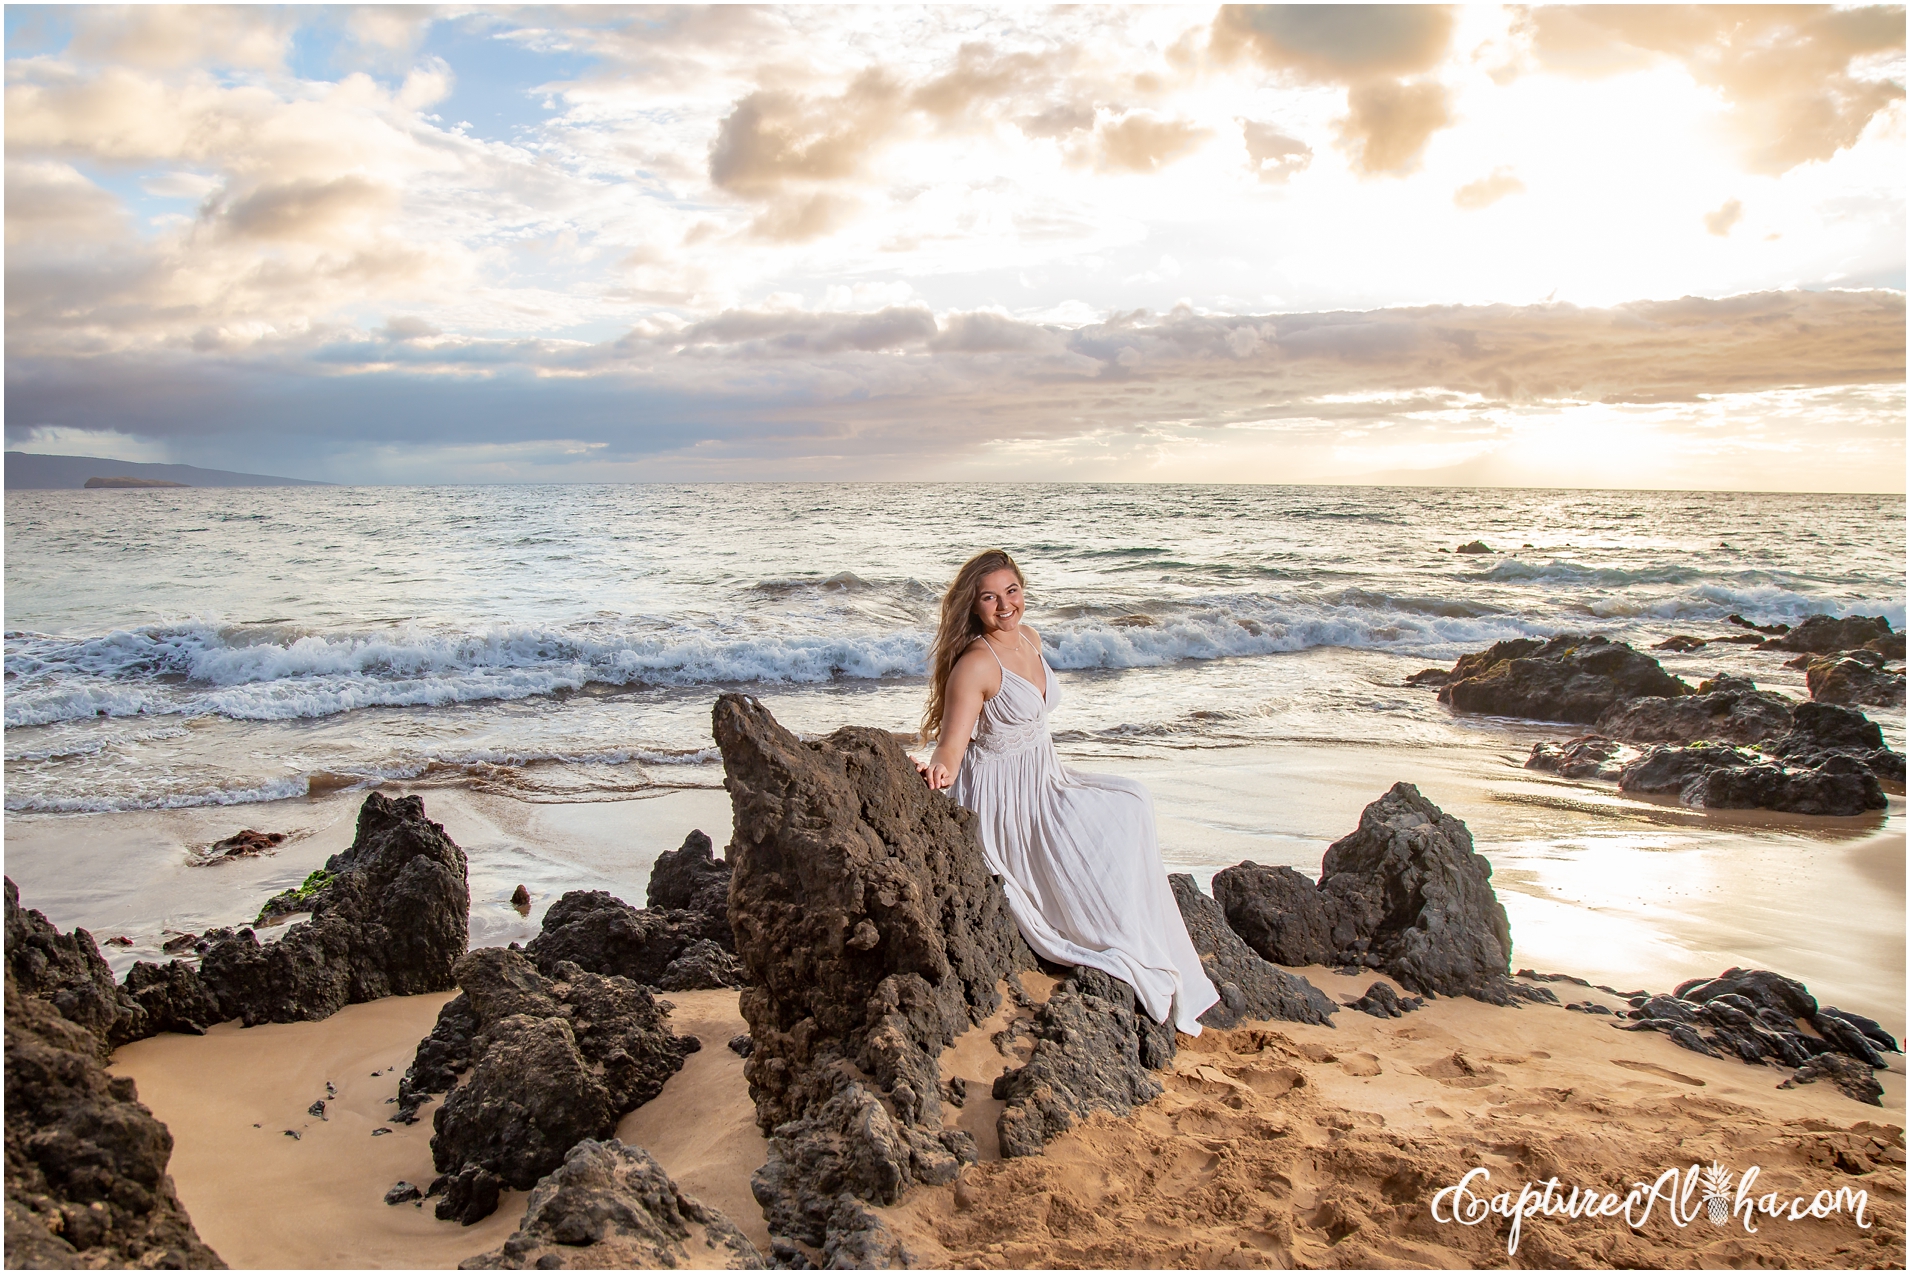 Maui Family Photography at Po'olenalena Beach Park